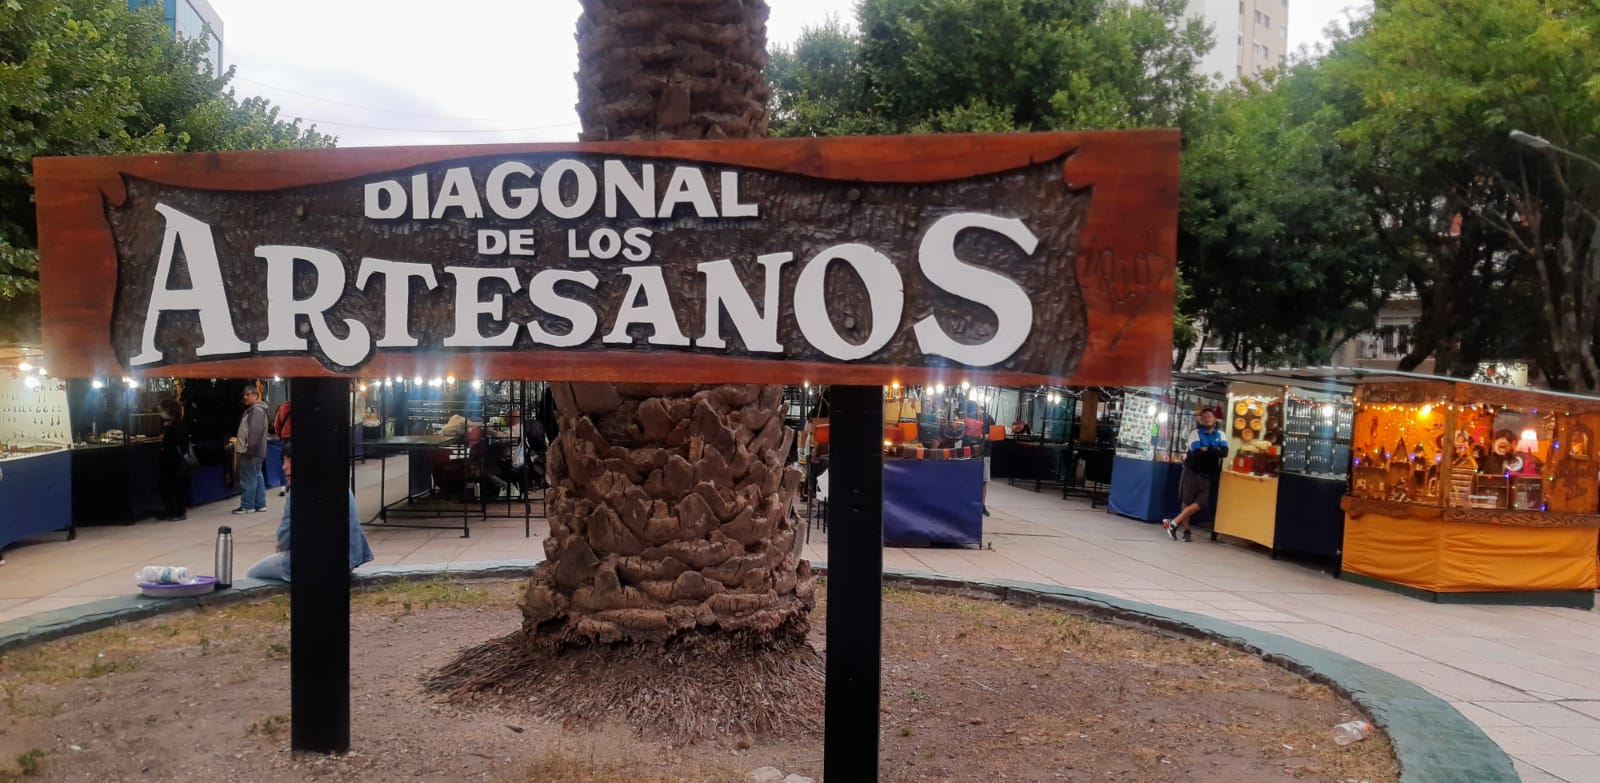 Comenzó la temporada en la Feria Central - Diagonal de los Artesanos